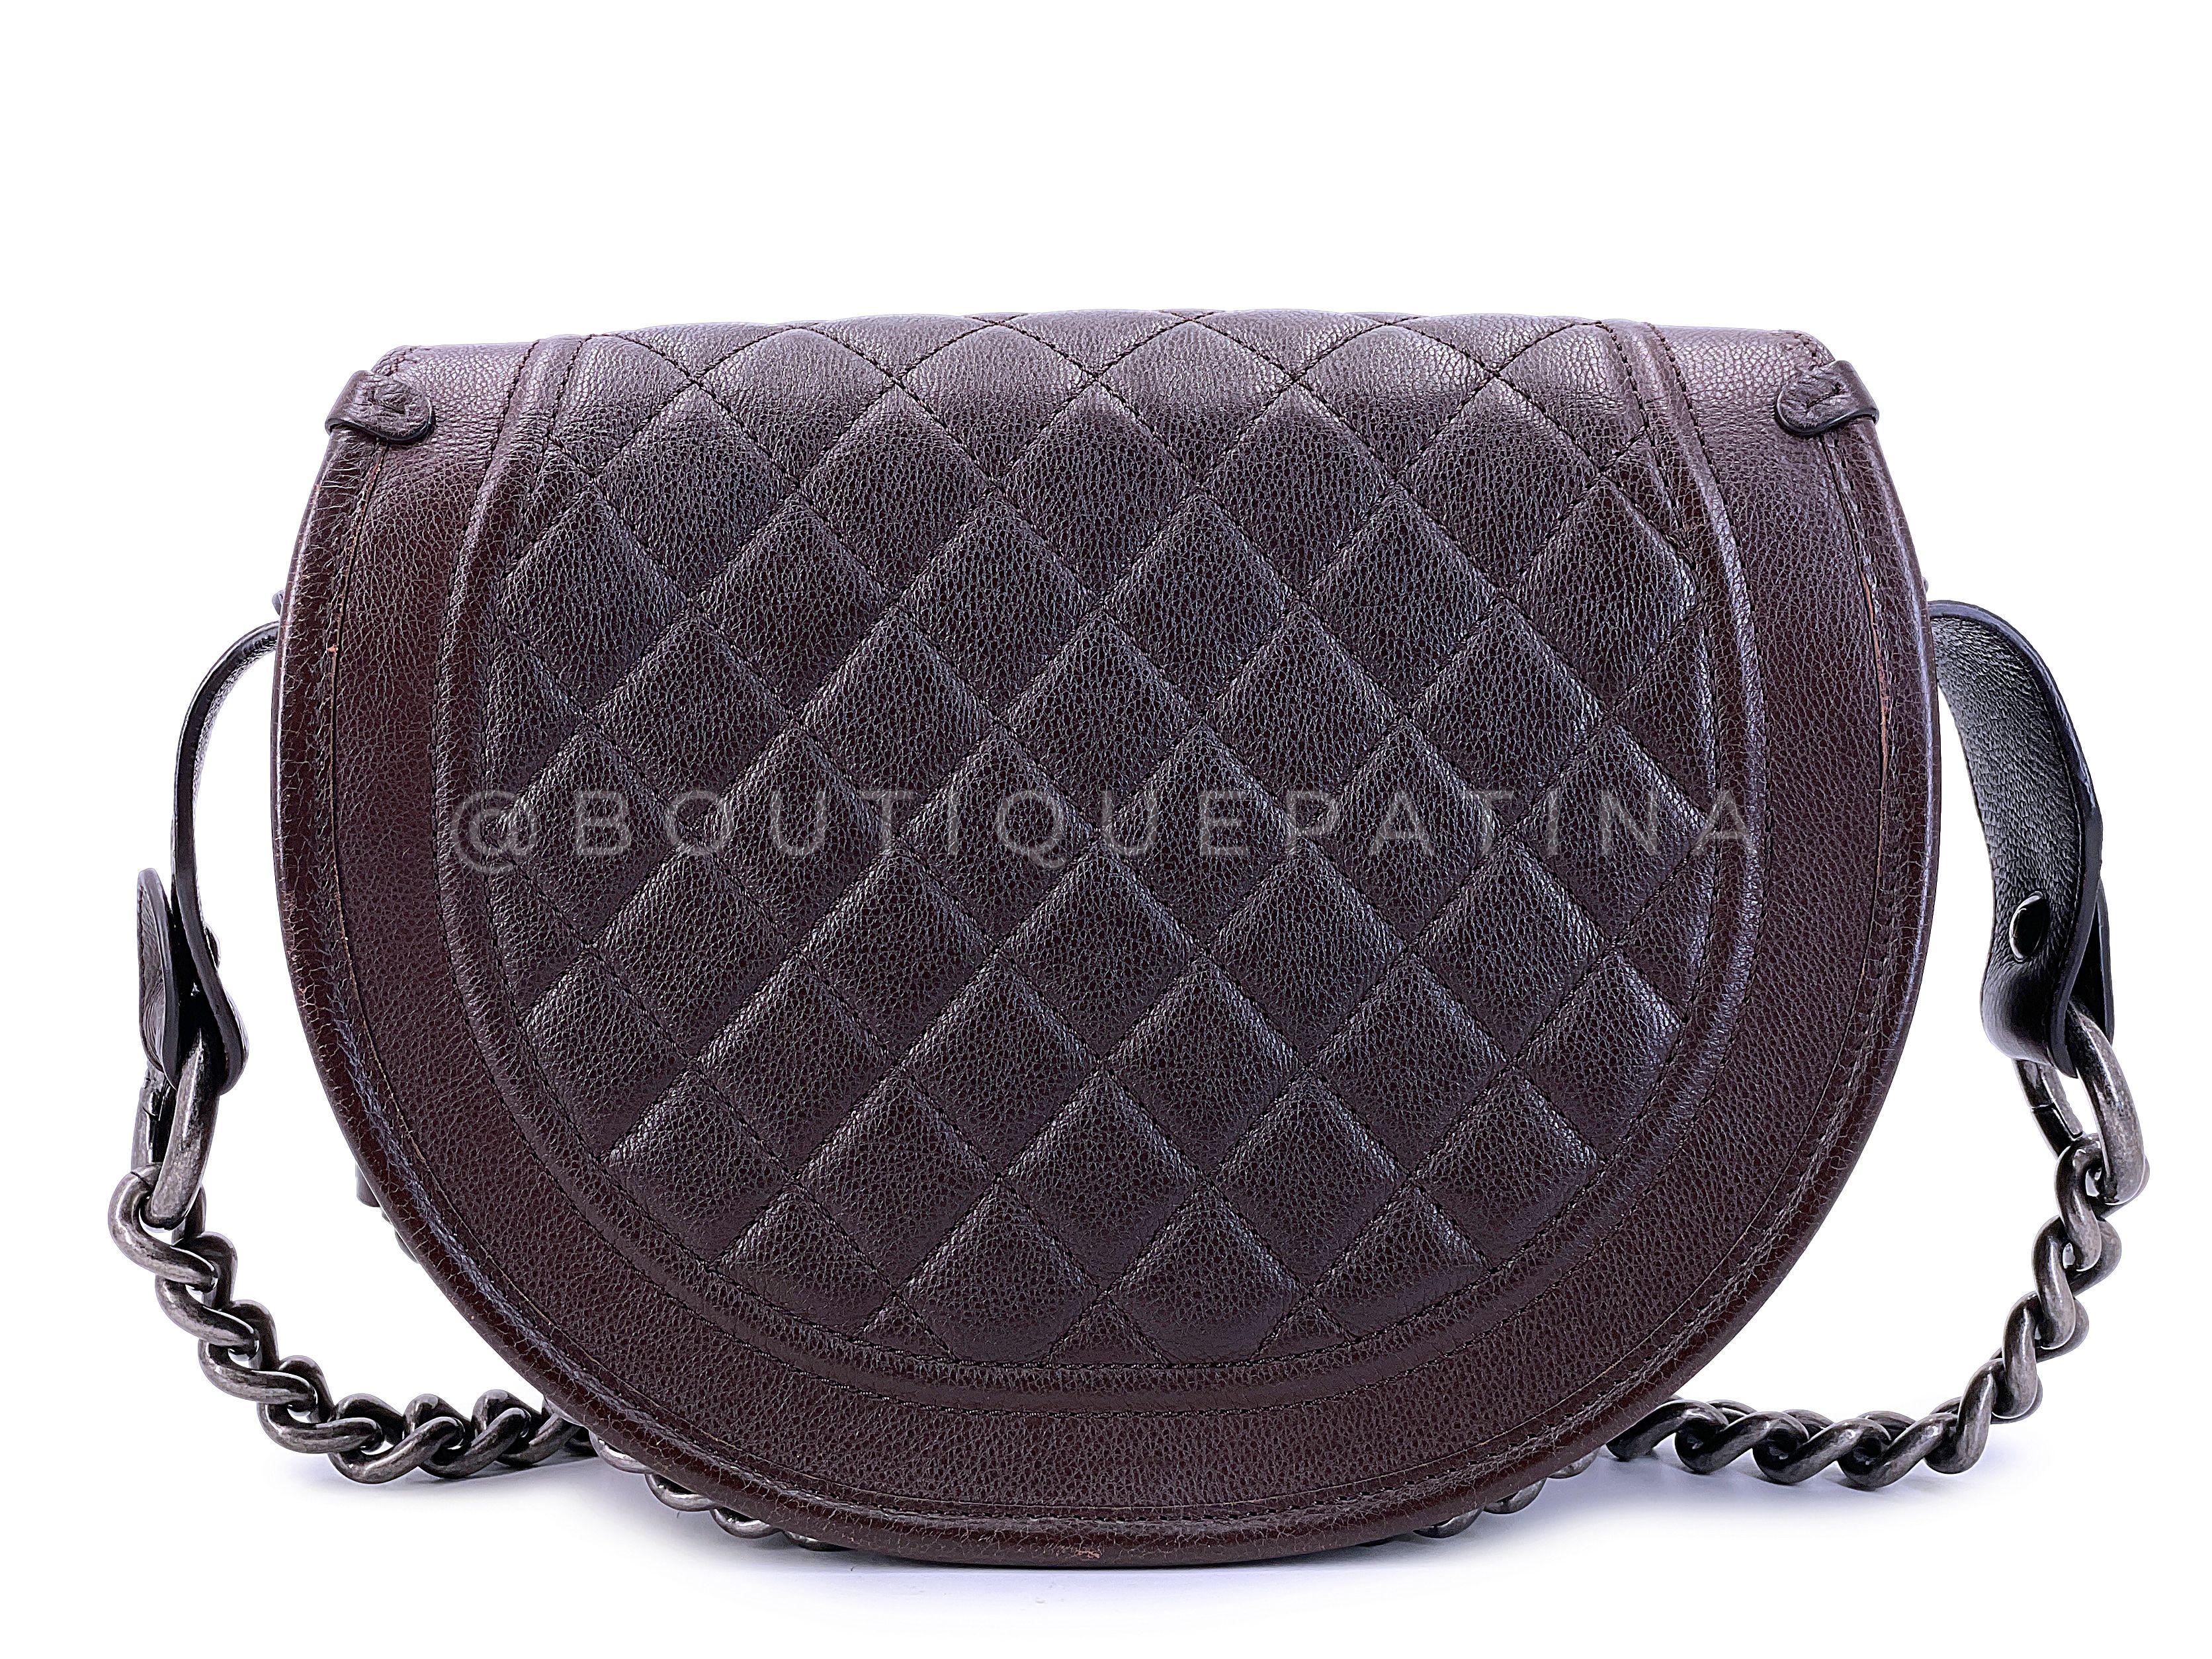 Chanel 2014 Paris Dallas Métiers d'Art Brown Pony Hair Bullet Strap Bag 67762 For Sale 1